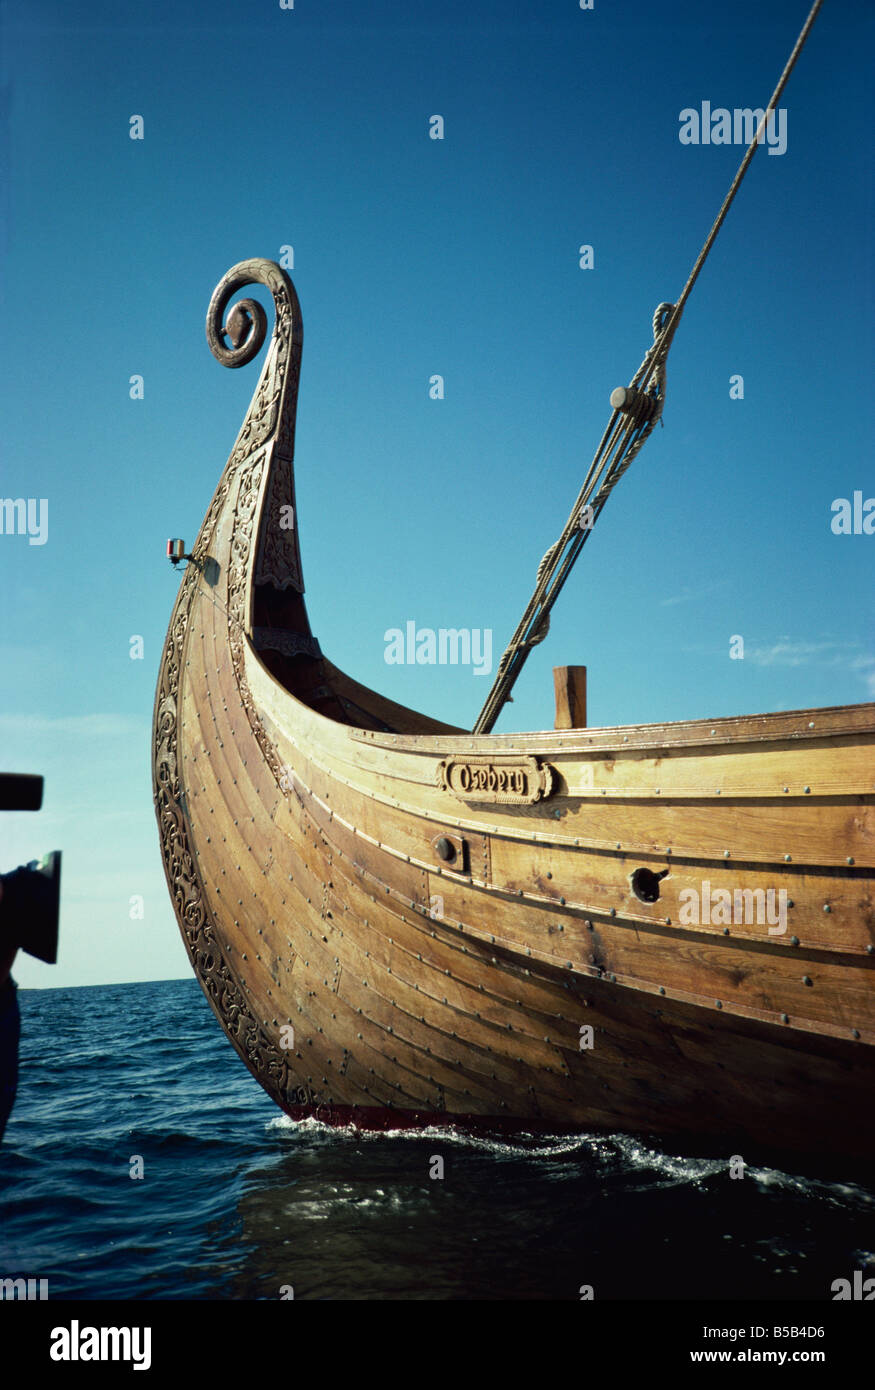 Réplique de 9e siècle bateau viking Oseberg Norvège Scandinavie Europe Banque D'Images